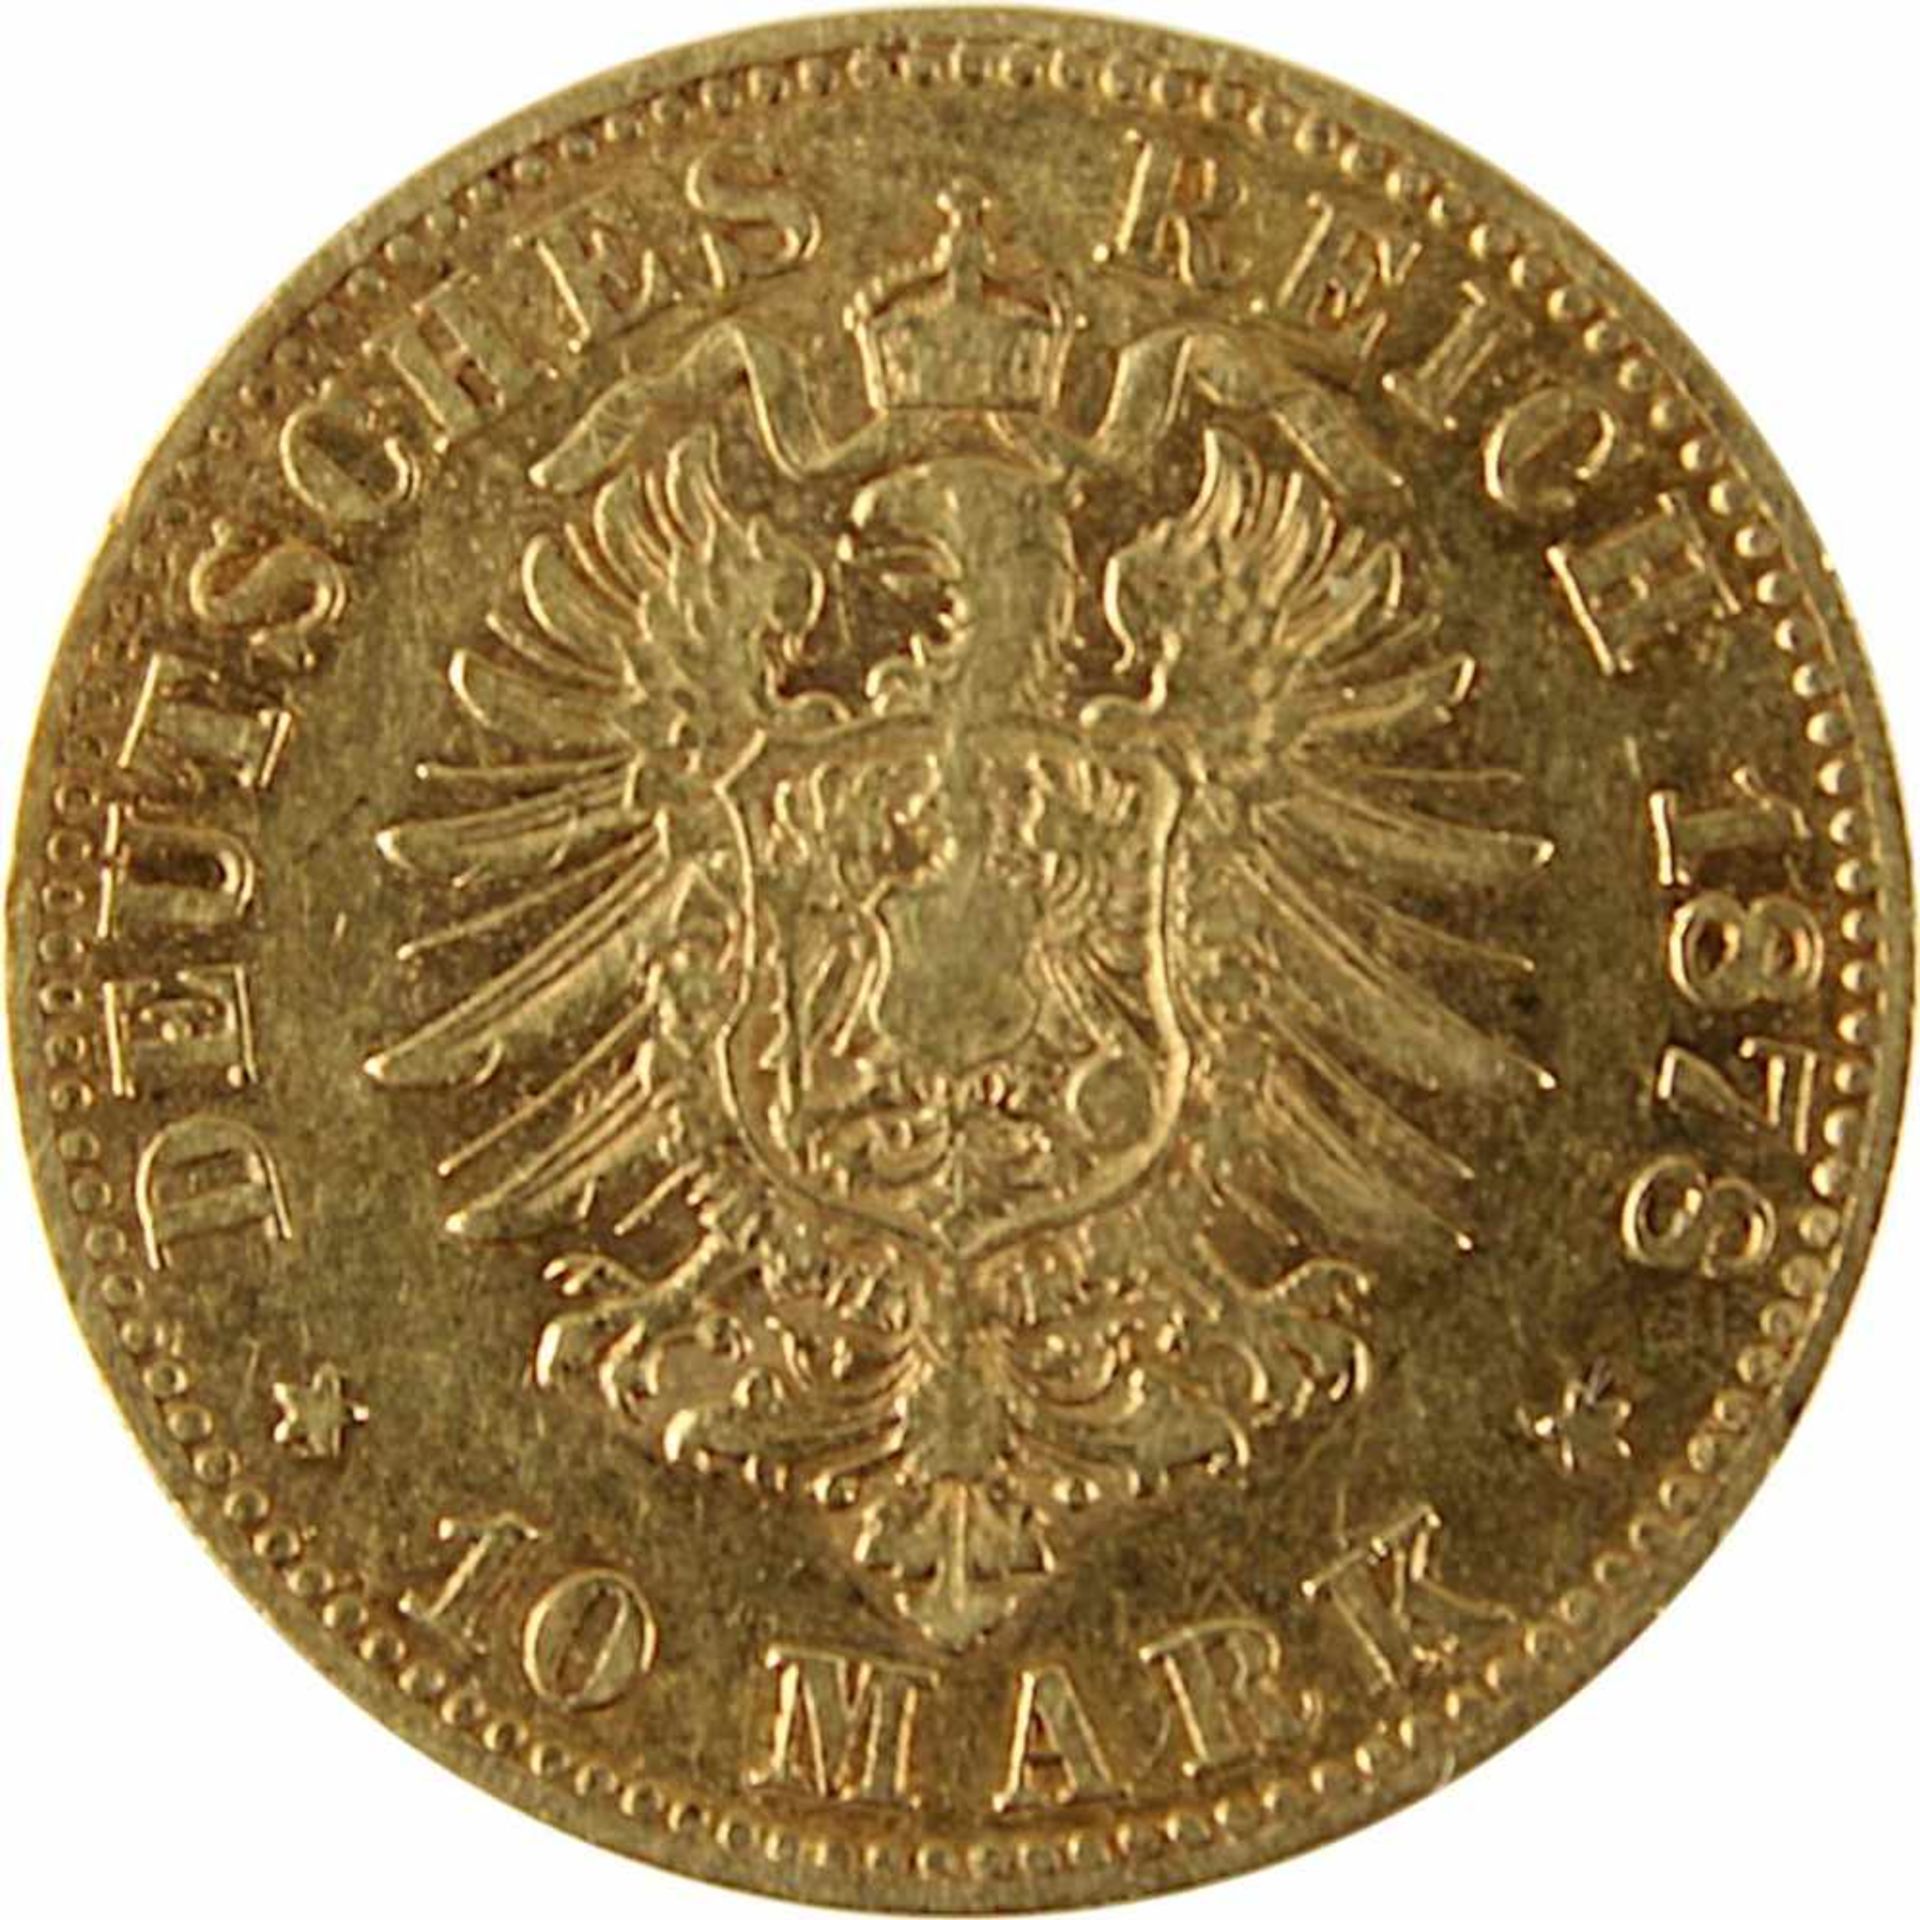 10 Mark Goldmünze Deutsches Reich, Württemberg 1878, 900er Gold, Av. Karl König von Wuerttemberg, - Bild 3 aus 3